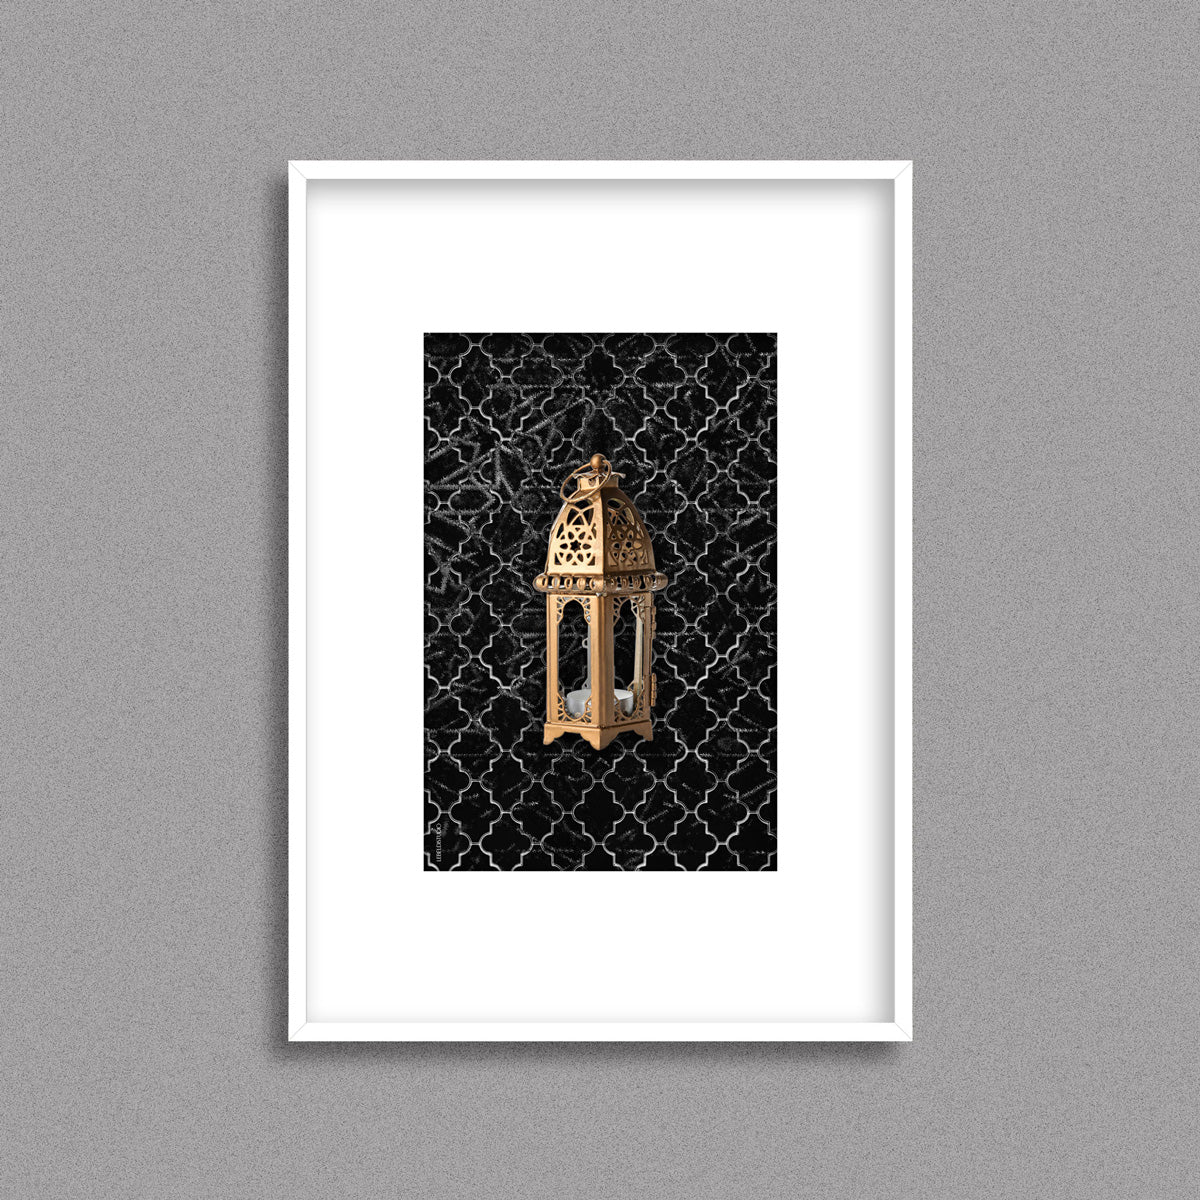 Tableau décoratif  d'une lanterne traditionnelle marocaine en dorée sur un fond de zellige marocain noir, encadré dans un cadre en blanc - Format A4.